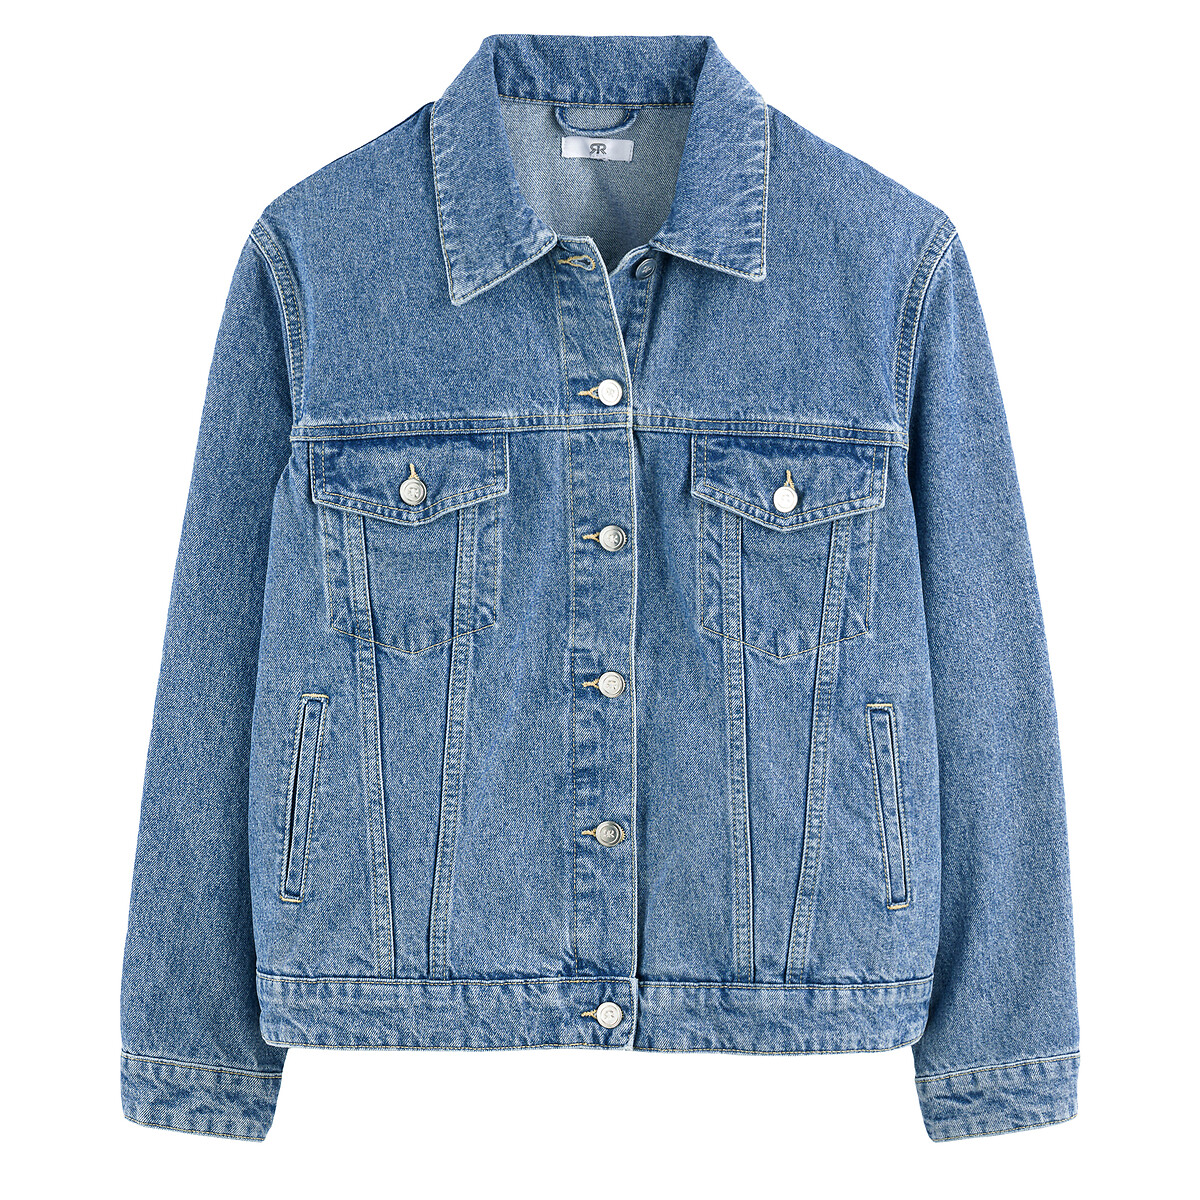 Куртка Из джинсовой ткани широкого покроя 46 (FR) - 52 (RUS) синий LaRedoute, размер 46 (FR) - 52 (RUS) Куртка Из джинсовой ткани широкого покроя 46 (FR) - 52 (RUS) синий - фото 5